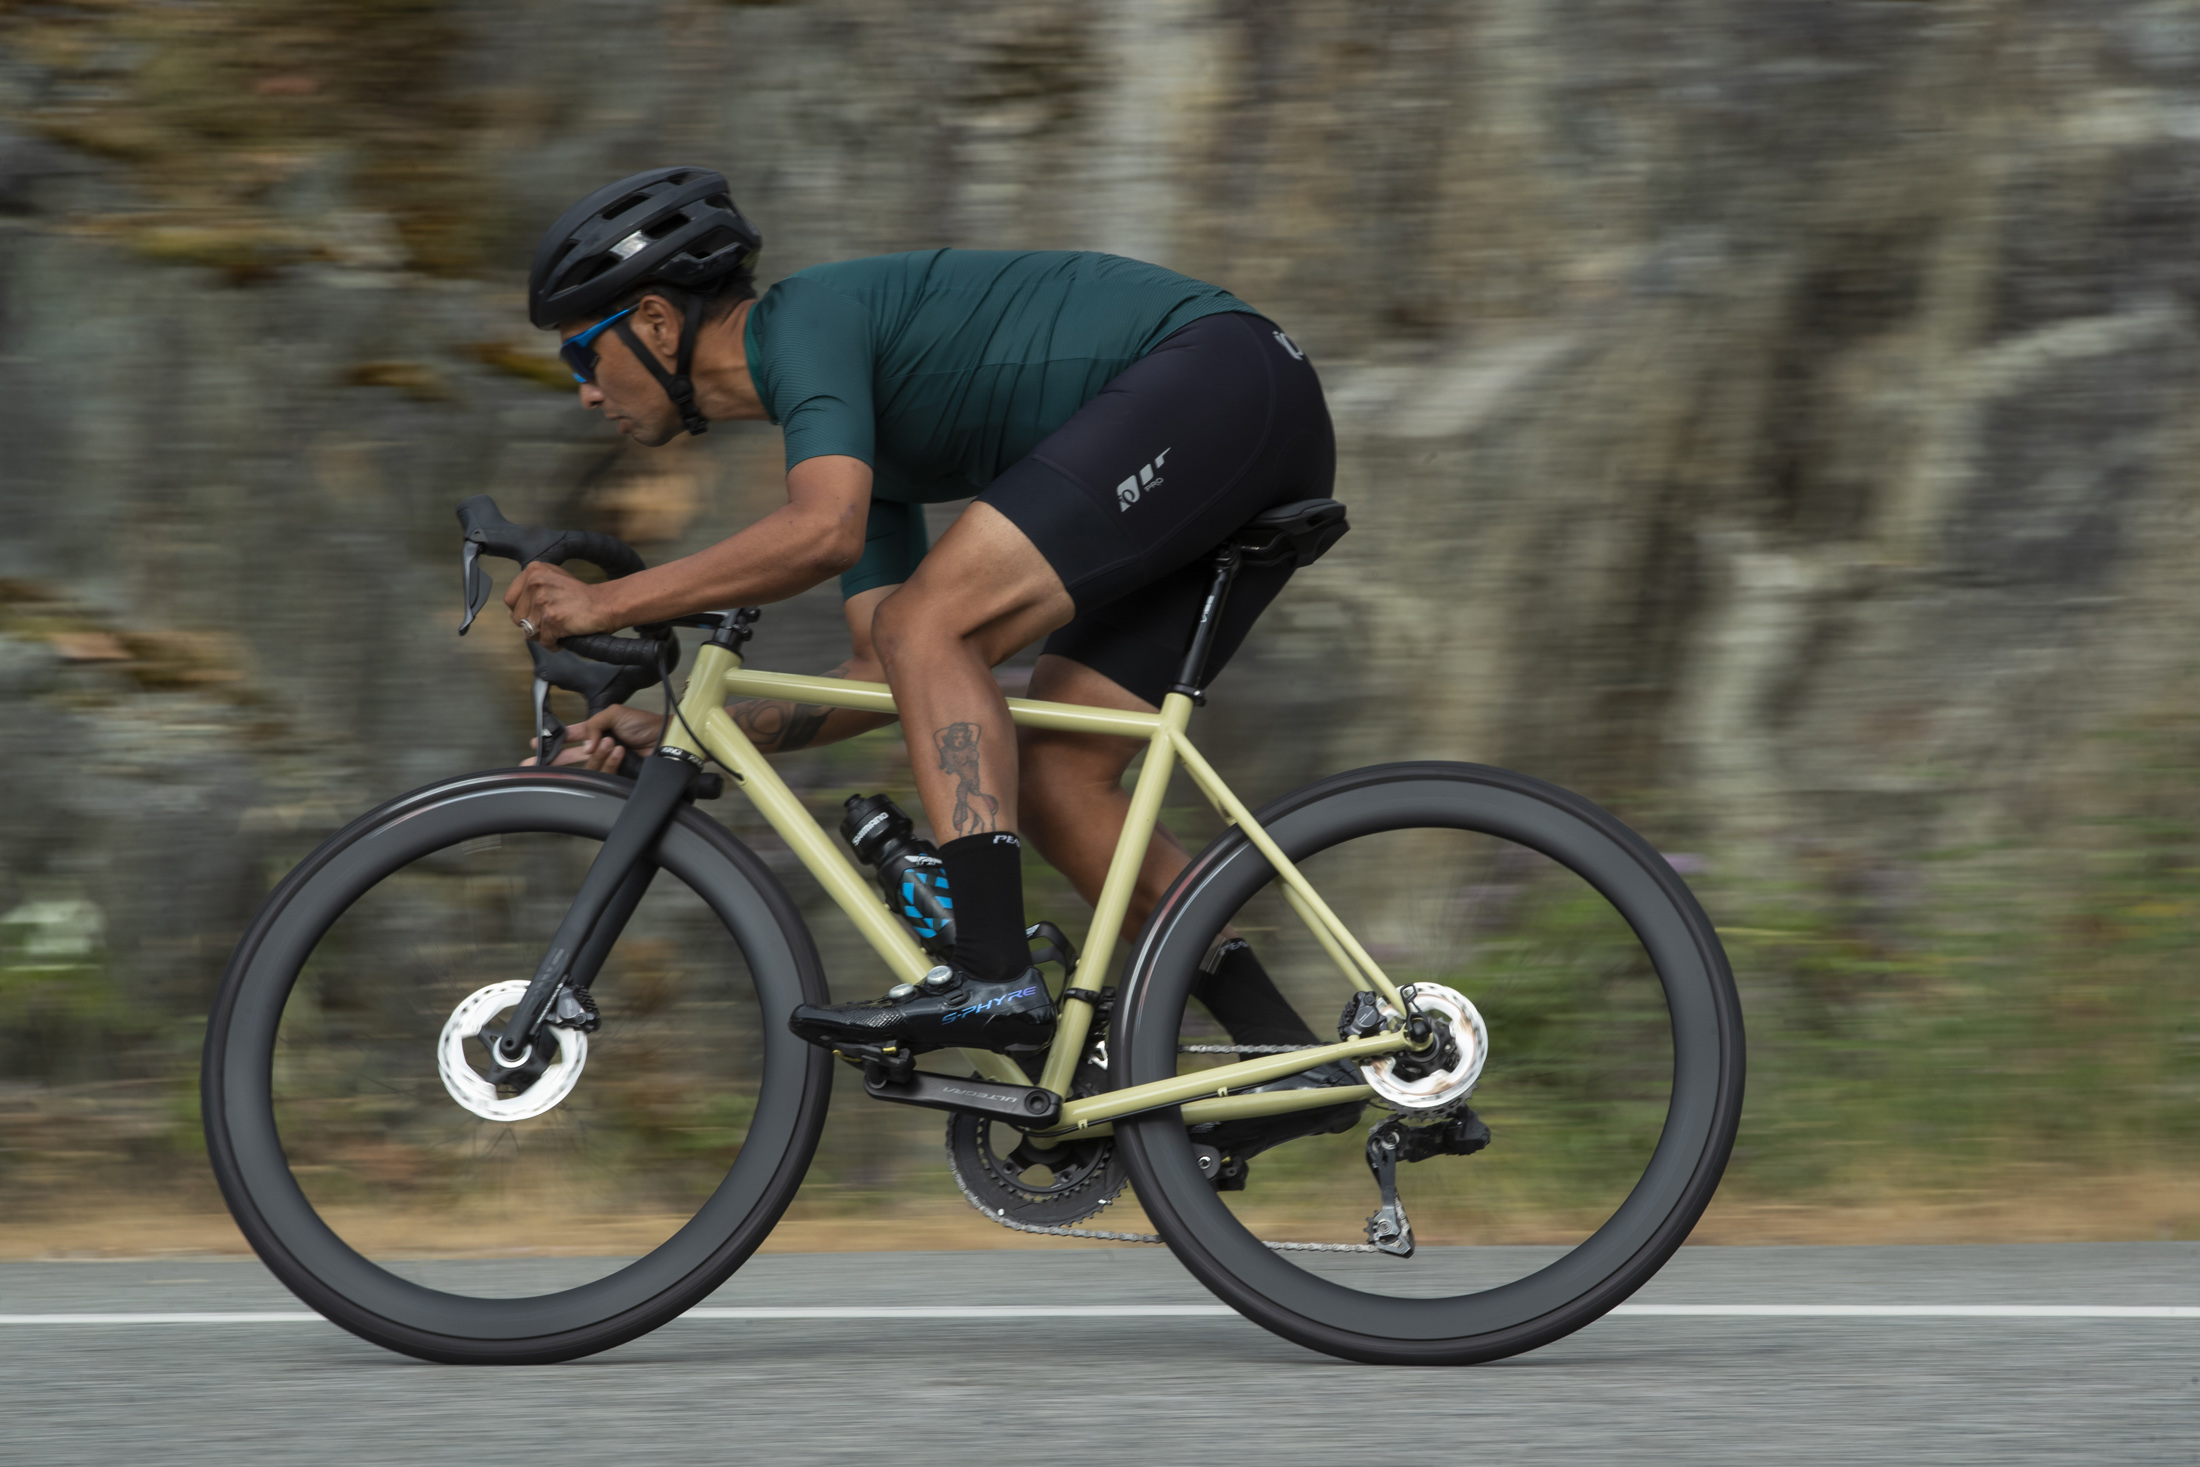 andar numa bicicleta de estrada com as rodas de Carbono da Shimano para bicicleta de estrada